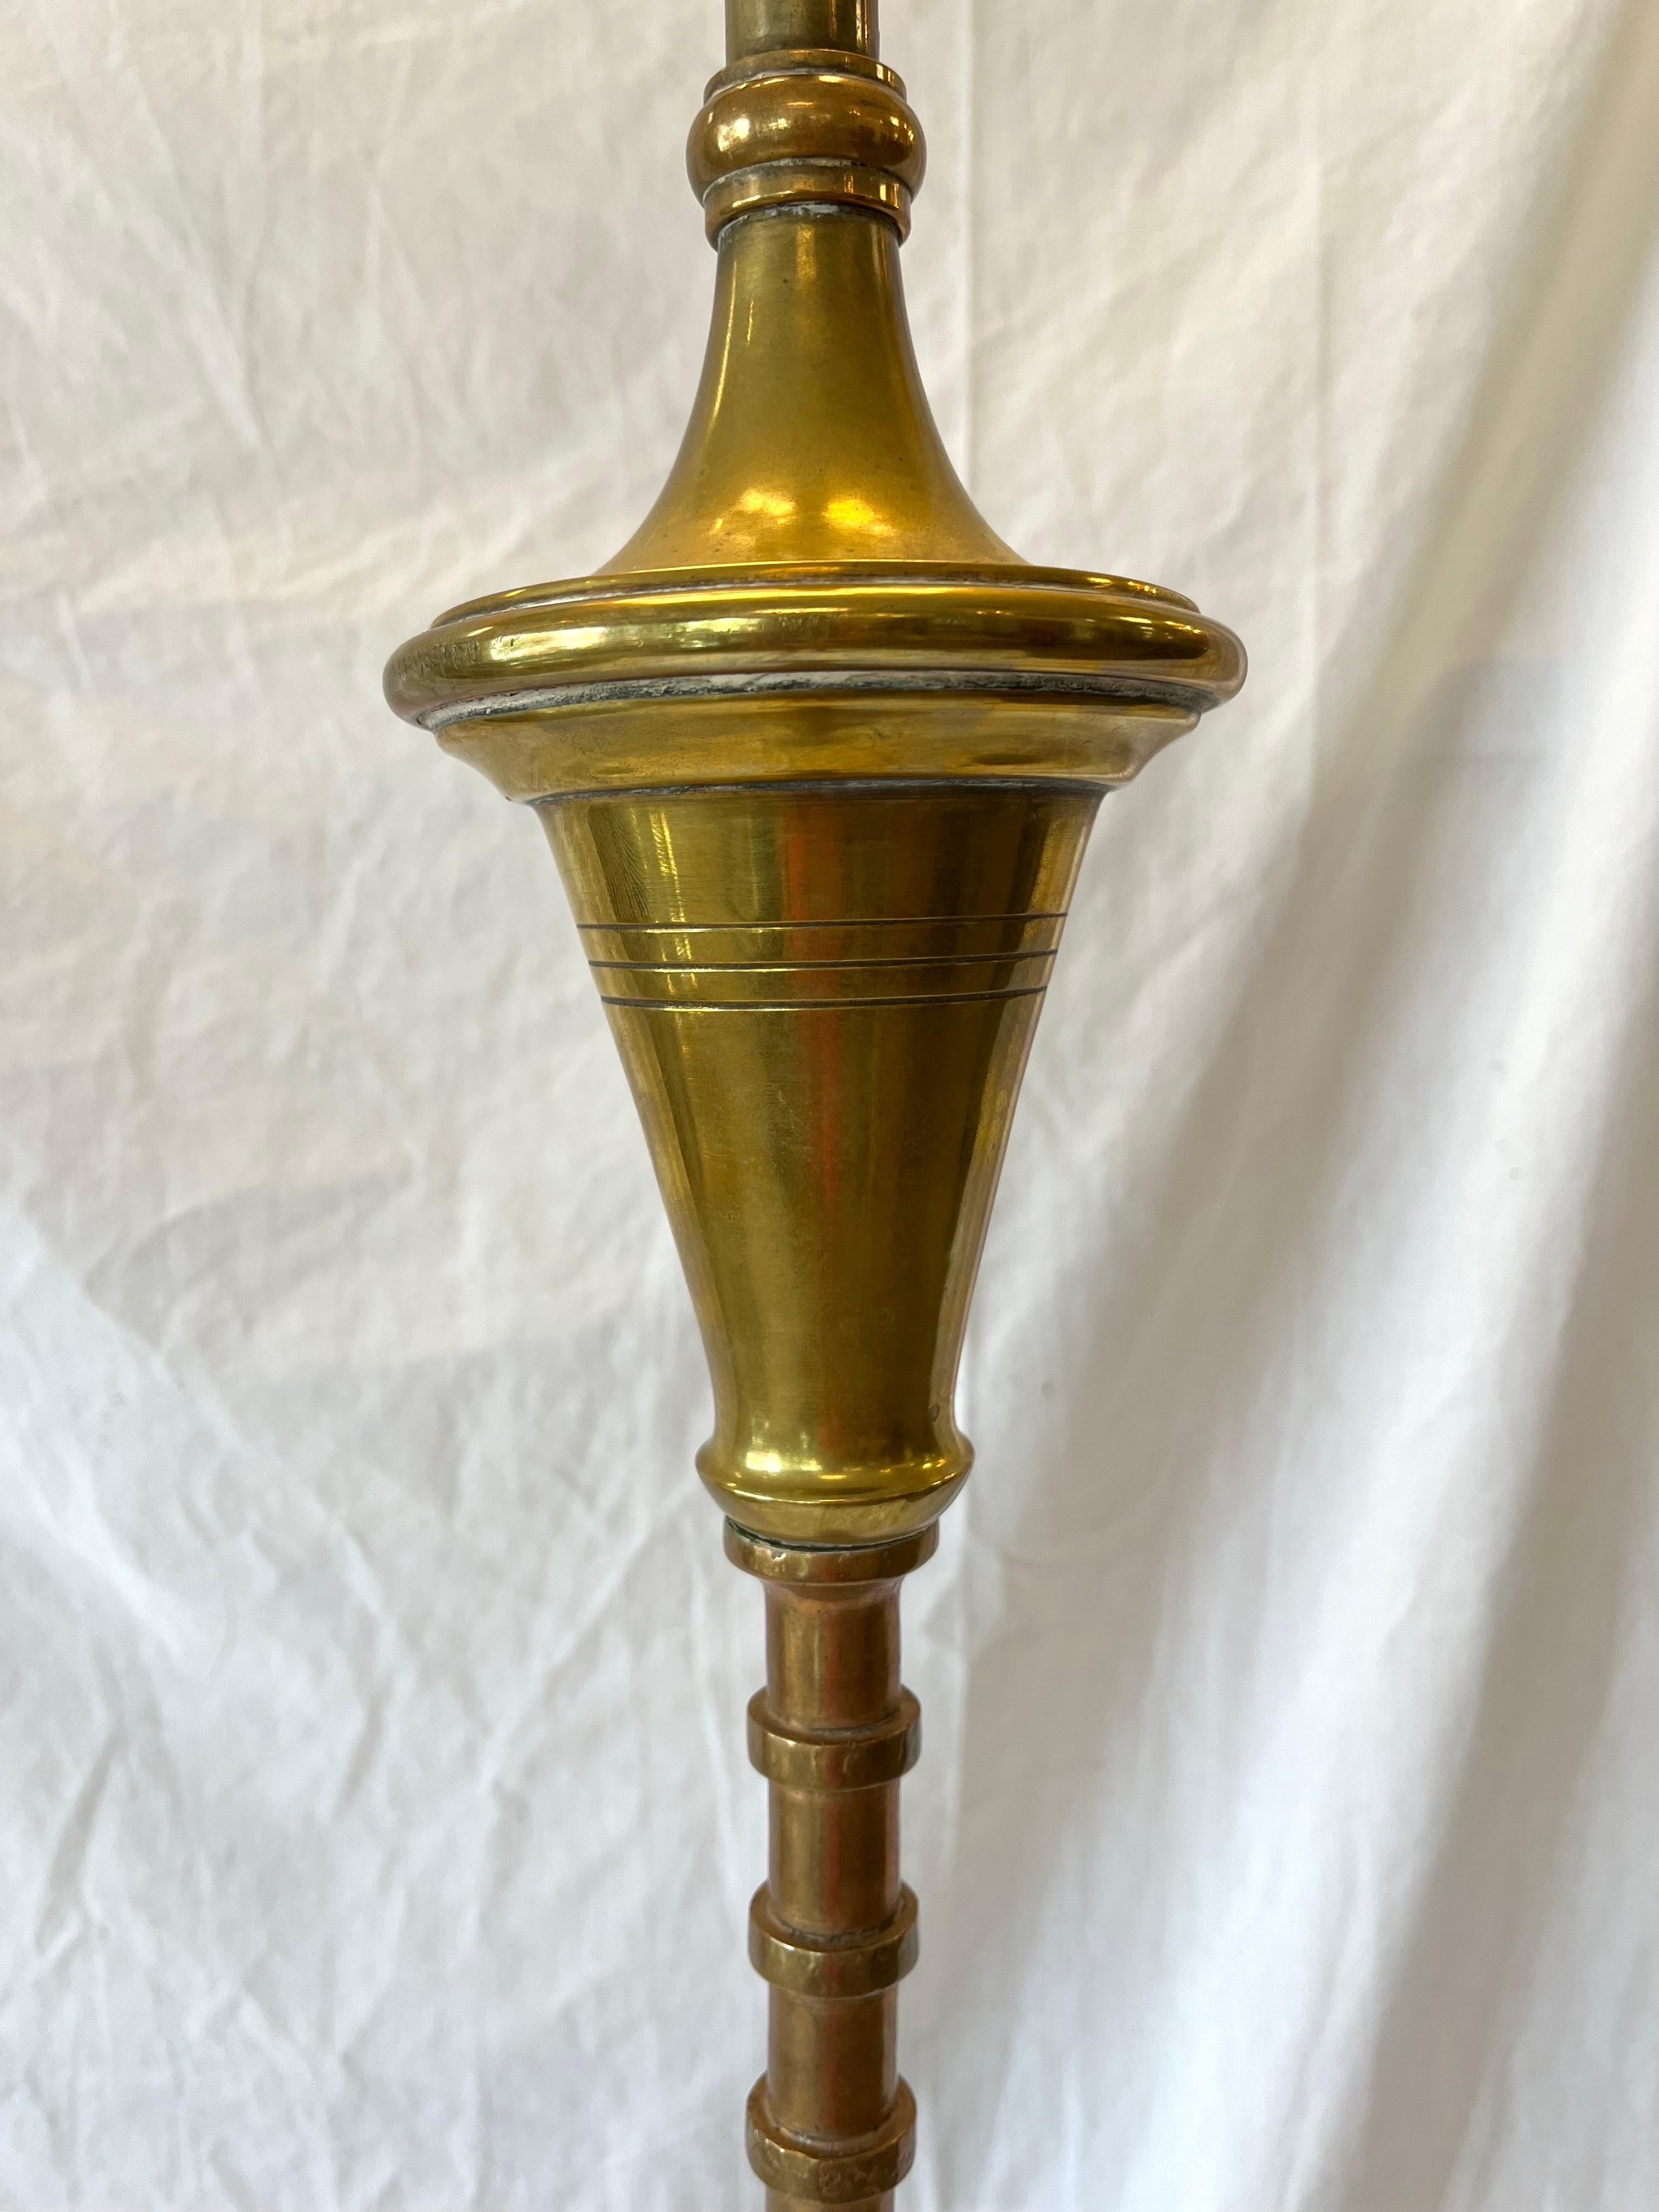 Eine verschnörkelte antike Stehlampe. Diese schlanke und schöne Stehlampe ist mit komplizierten Mustern aus verschiedenen Metallen, Kupfer und Messing, verziert. Der Sockel zeigt die Vielfalt des gemischten Metalls sowie das Können, die